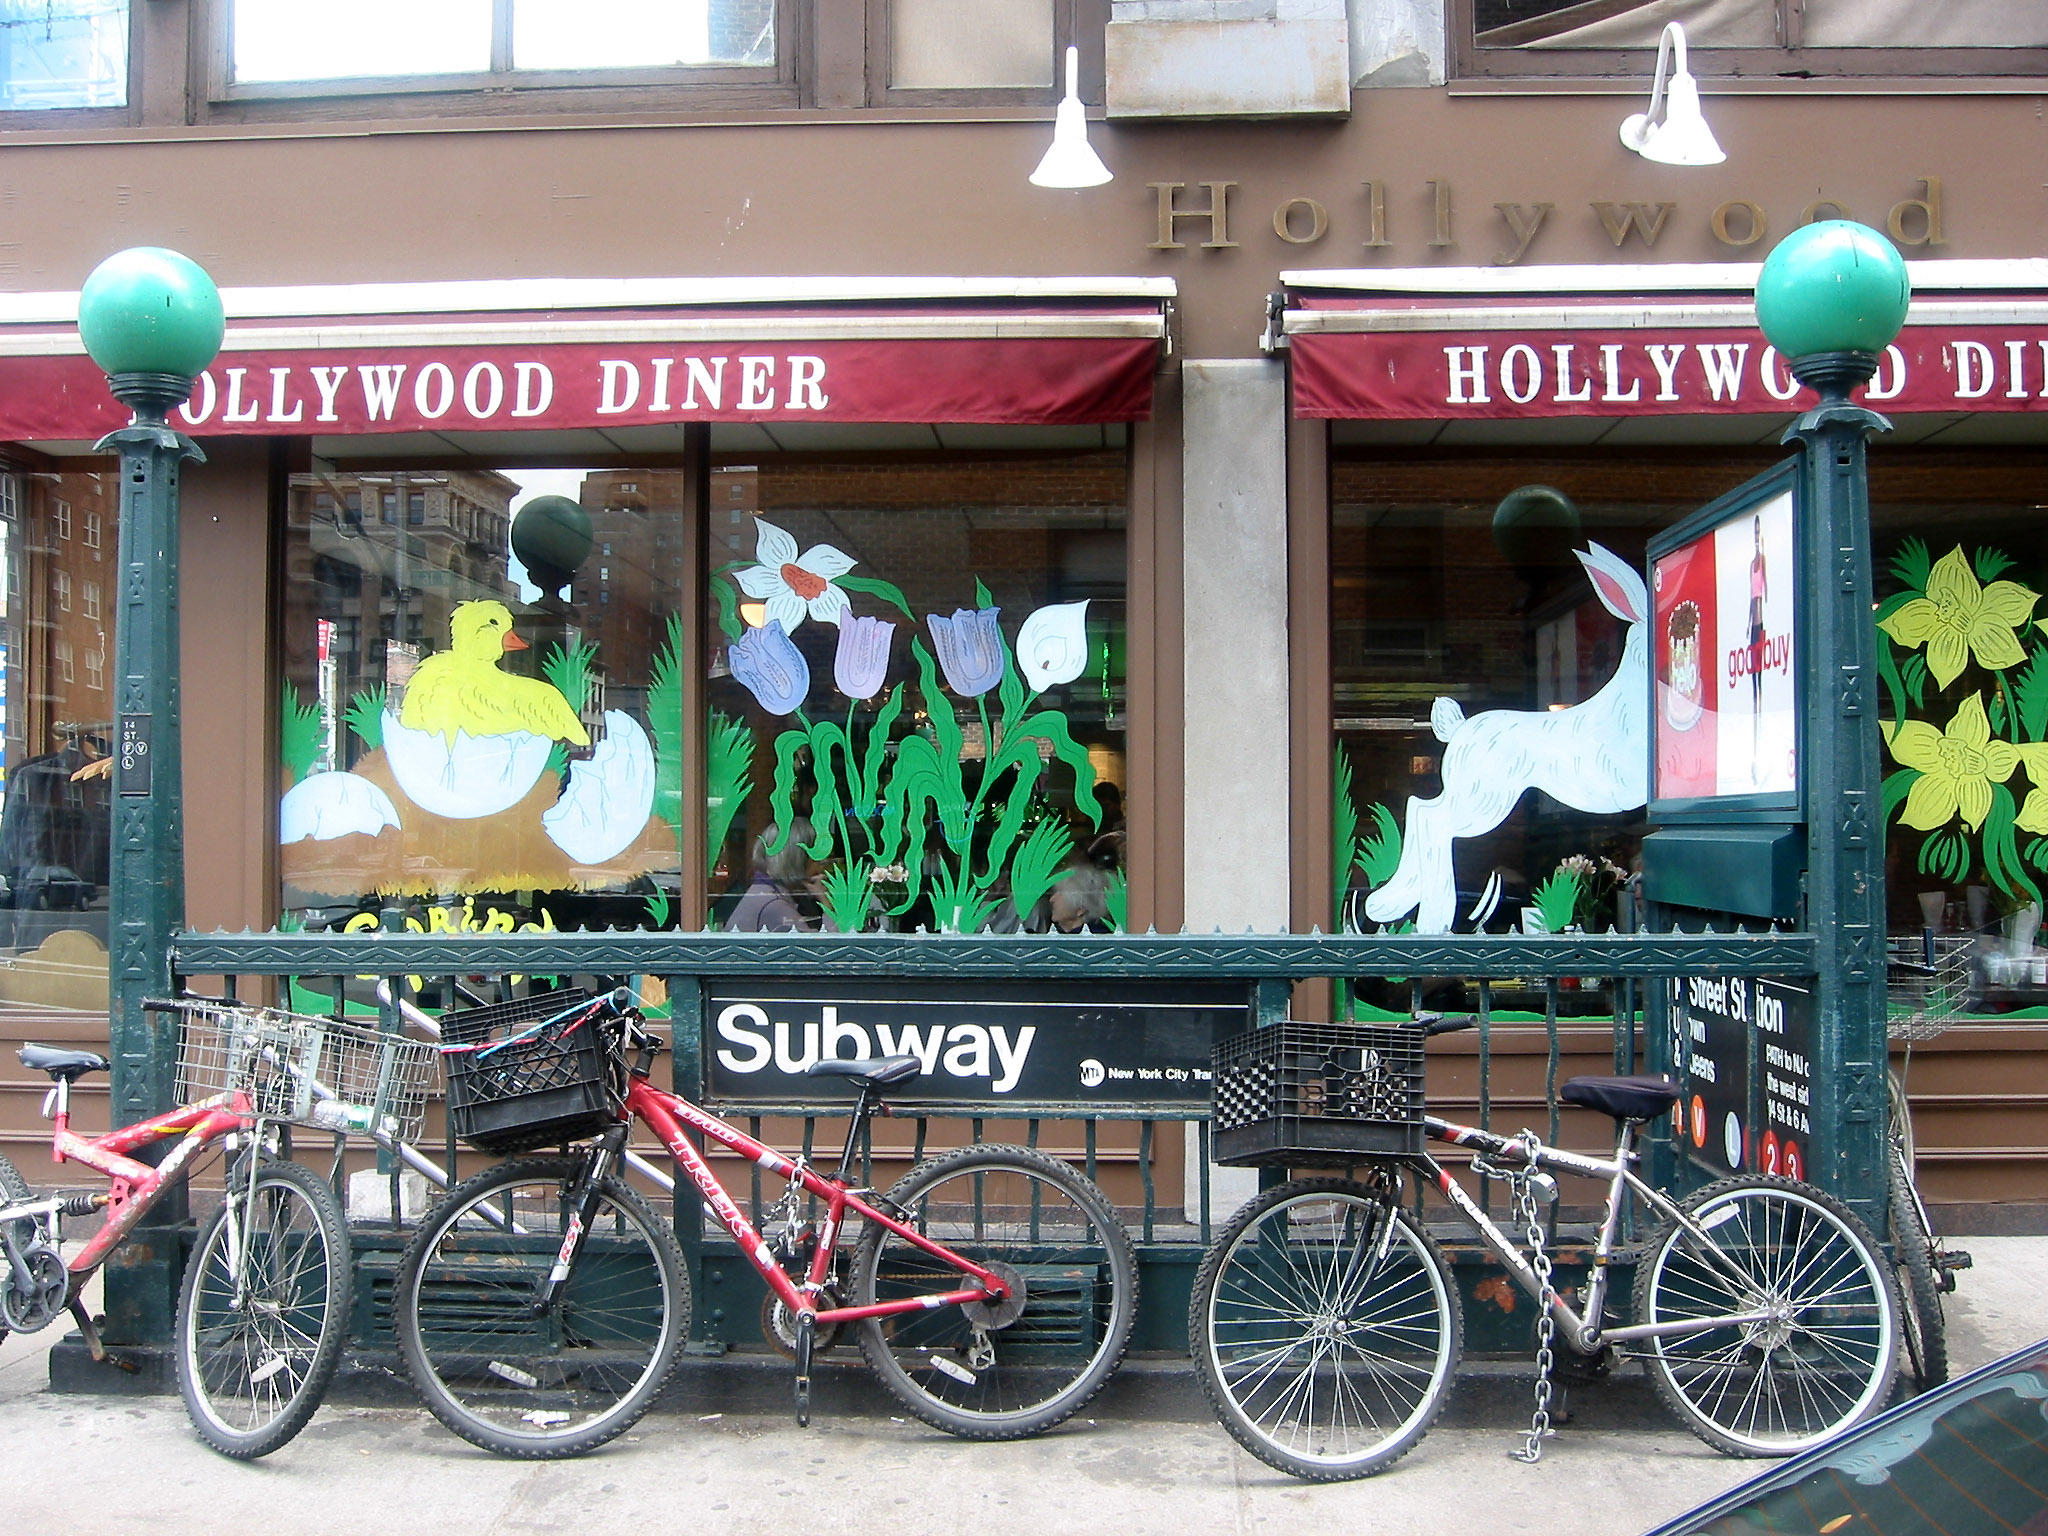 Hollywood Diner & Subway Entrance at 15th Street